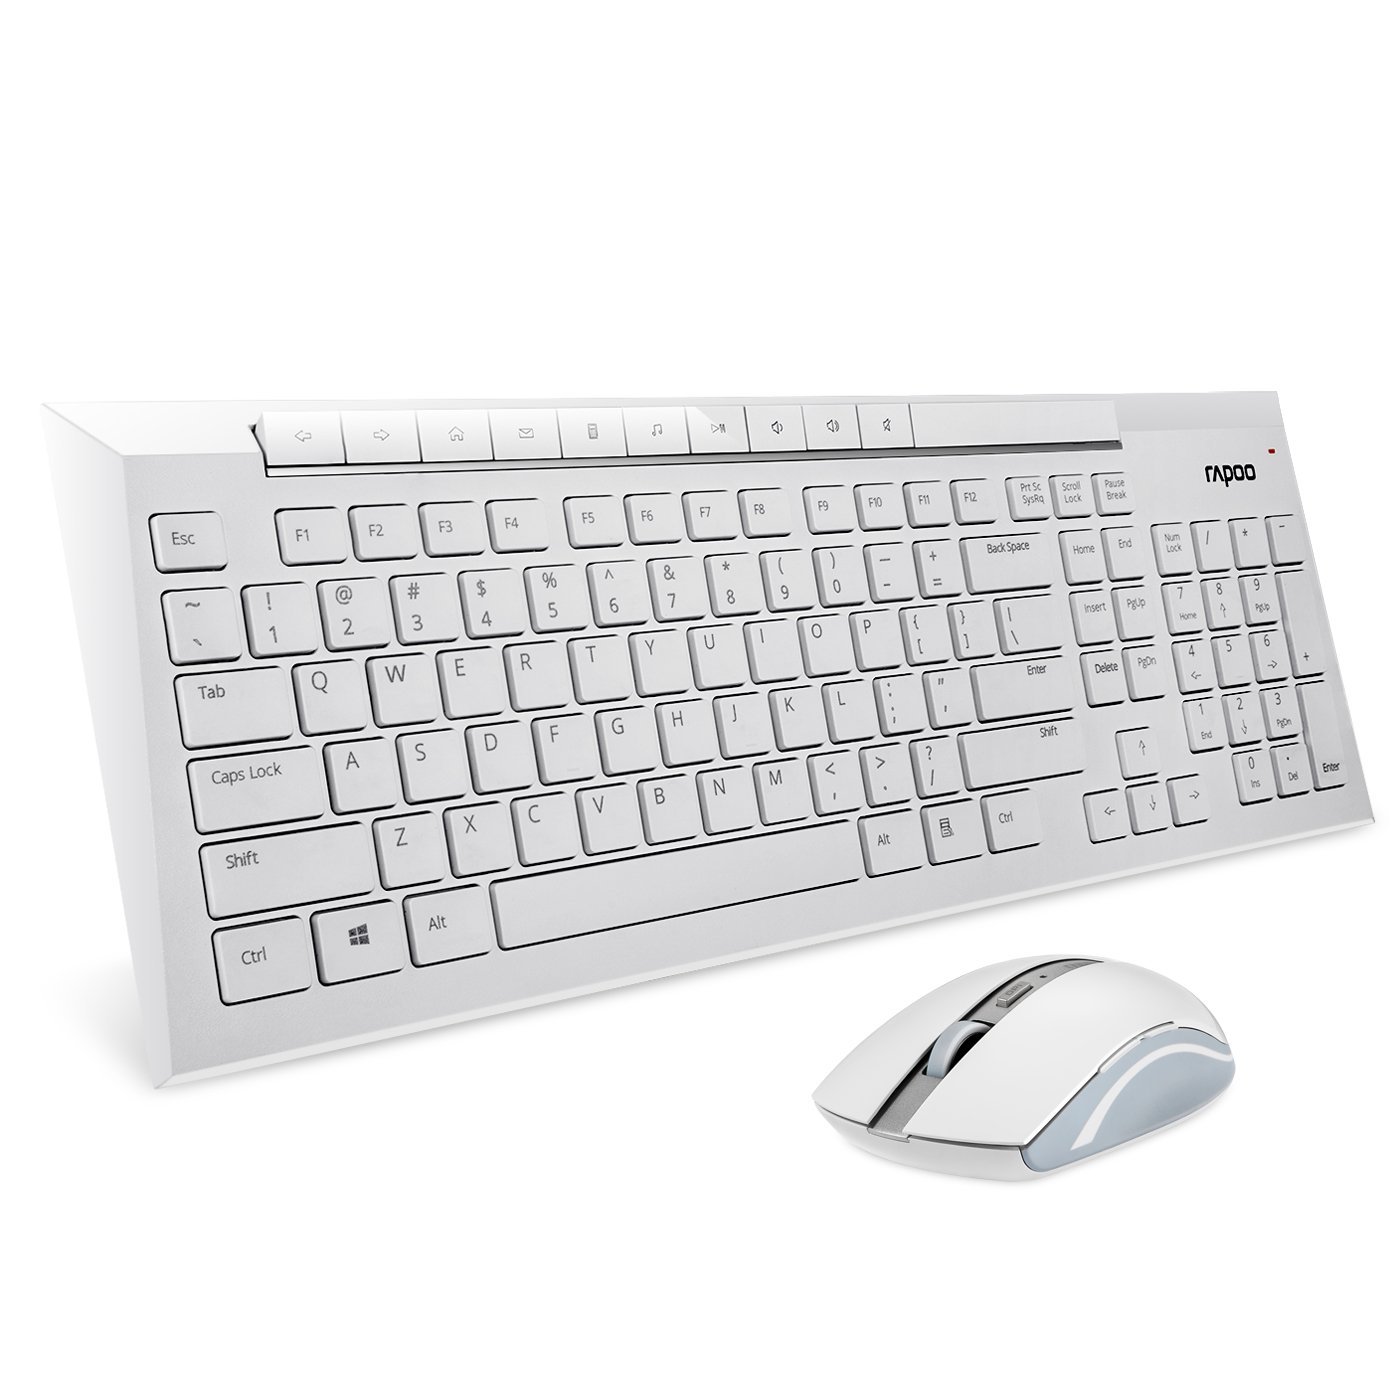 كيبورد + موس رپو-rapoo 8200P Wireless Keyboard and Mouse